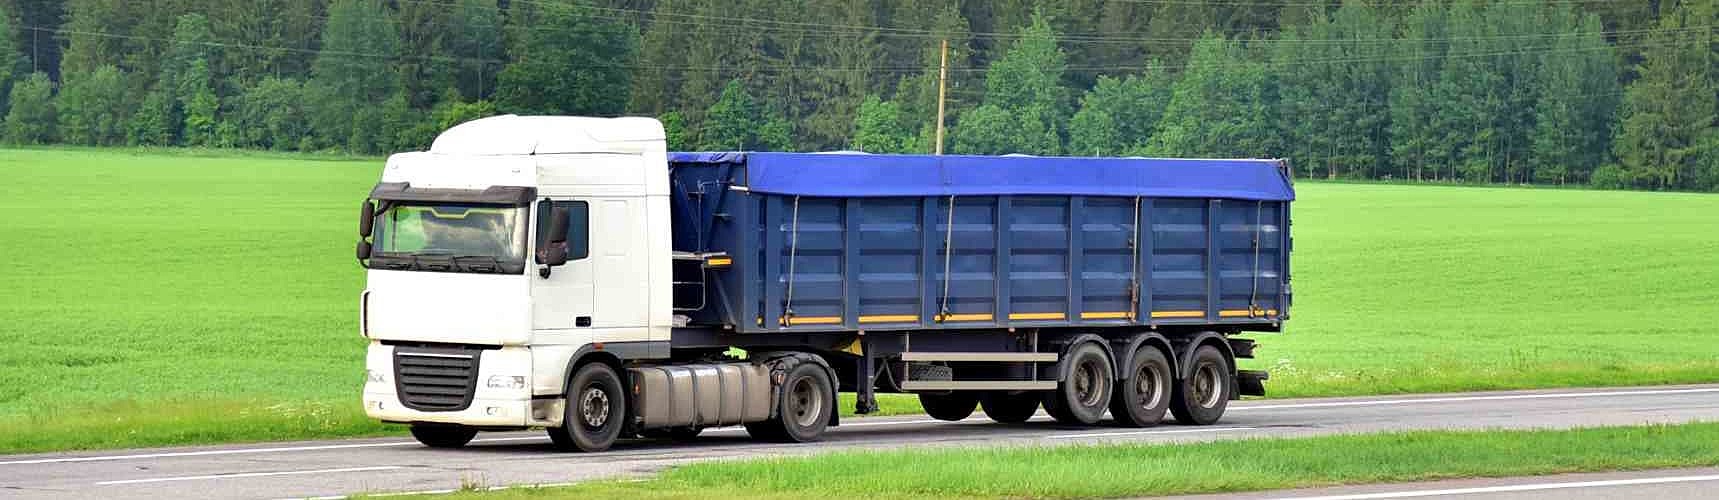 Veículo de carga: um caminhão trafega em uma rodovia